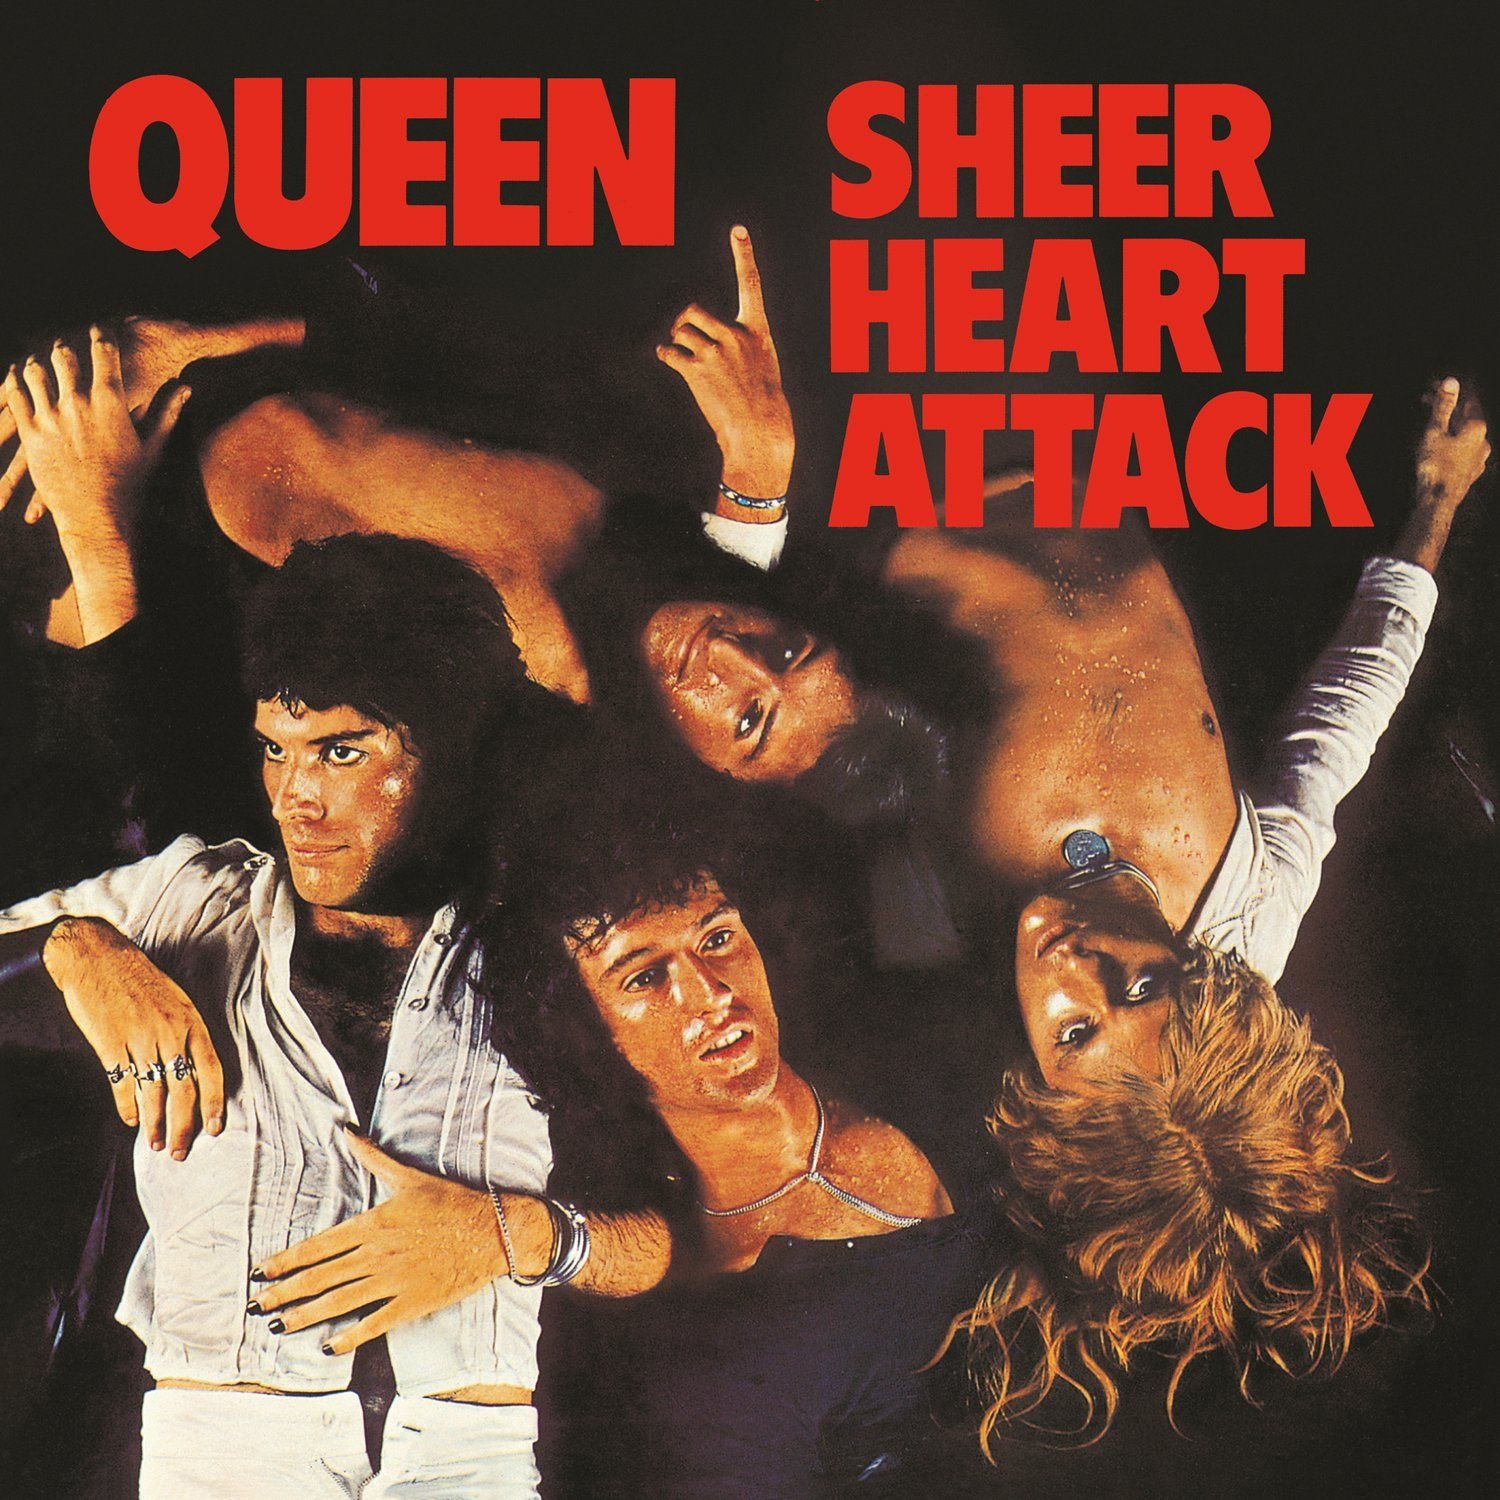 Vinile Queen - Sheer Heart Attack NUOVO SIGILLATO, EDIZIONE DEL 25/09/2015 SUBITO DISPONIBILE